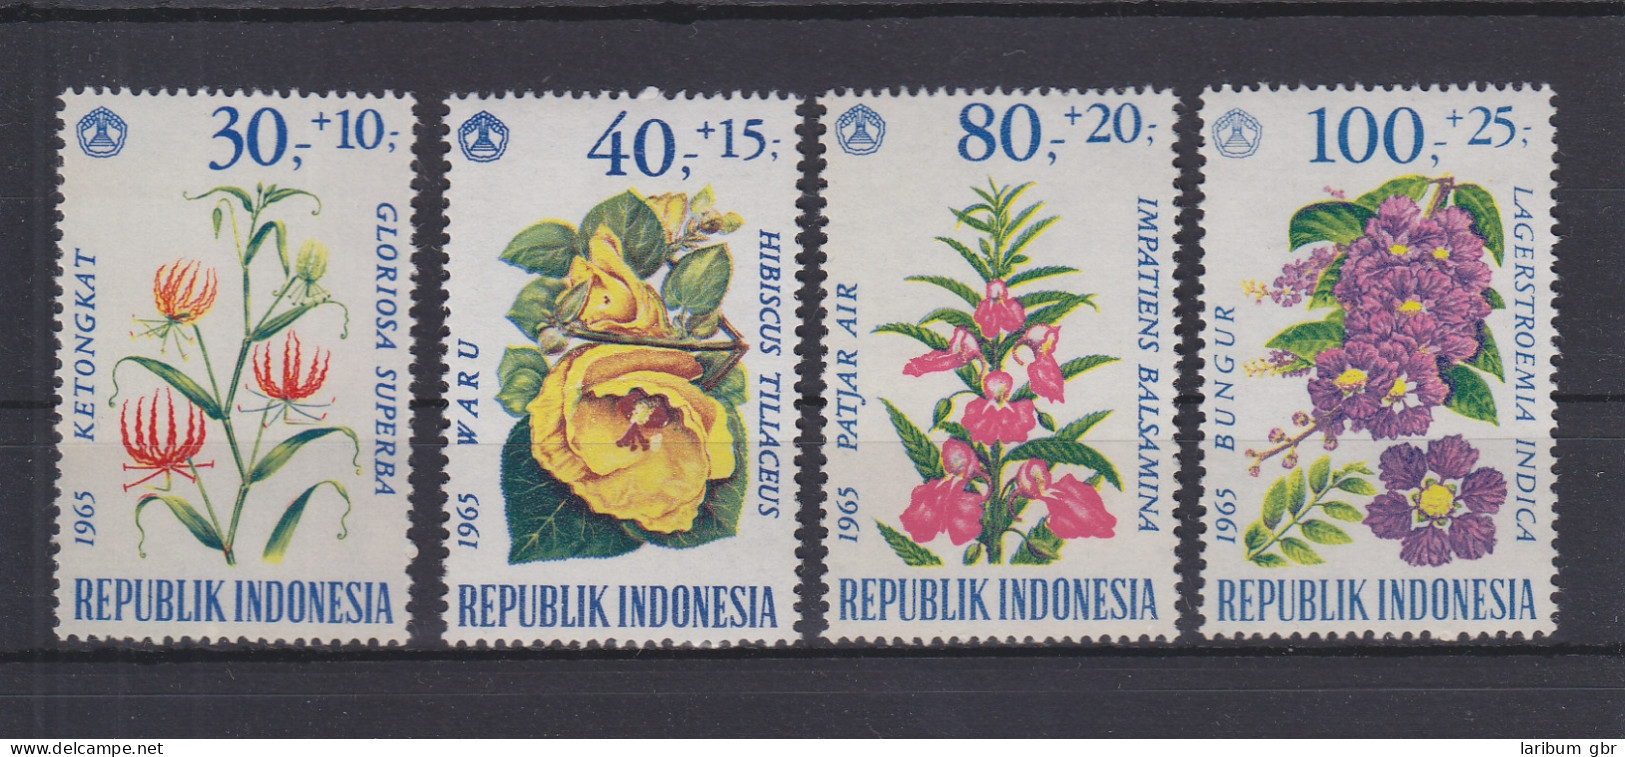 Indonesien 499-502 Postfrisch Blumen, Indonesia MNH #GE127 - Indonesien